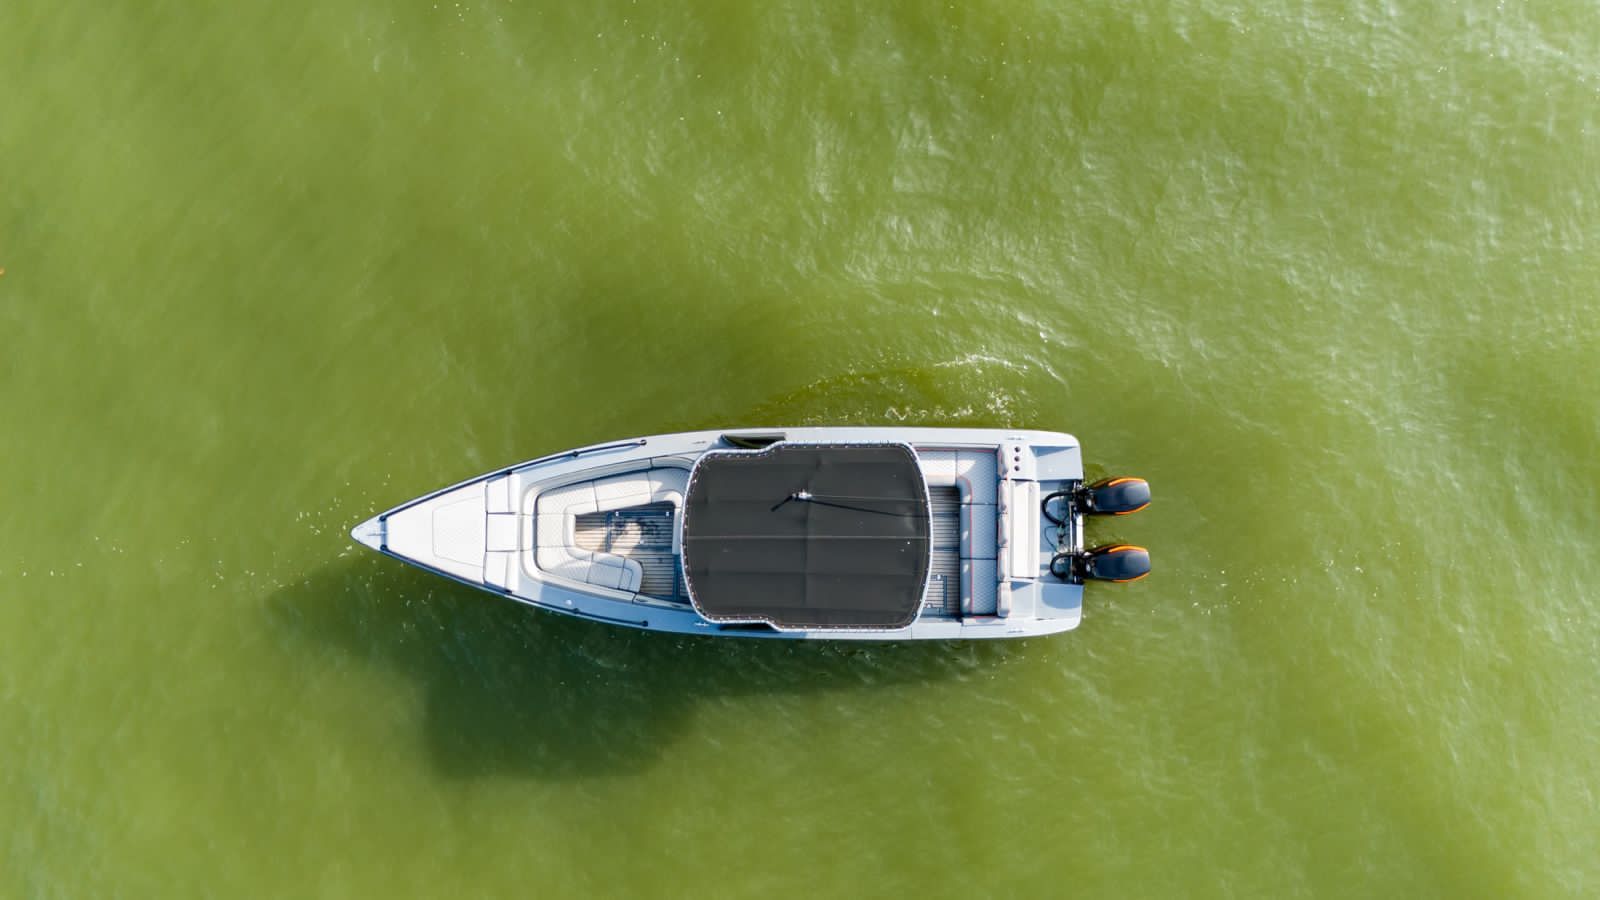 Black Bunny speedboat 34ft/14ppl